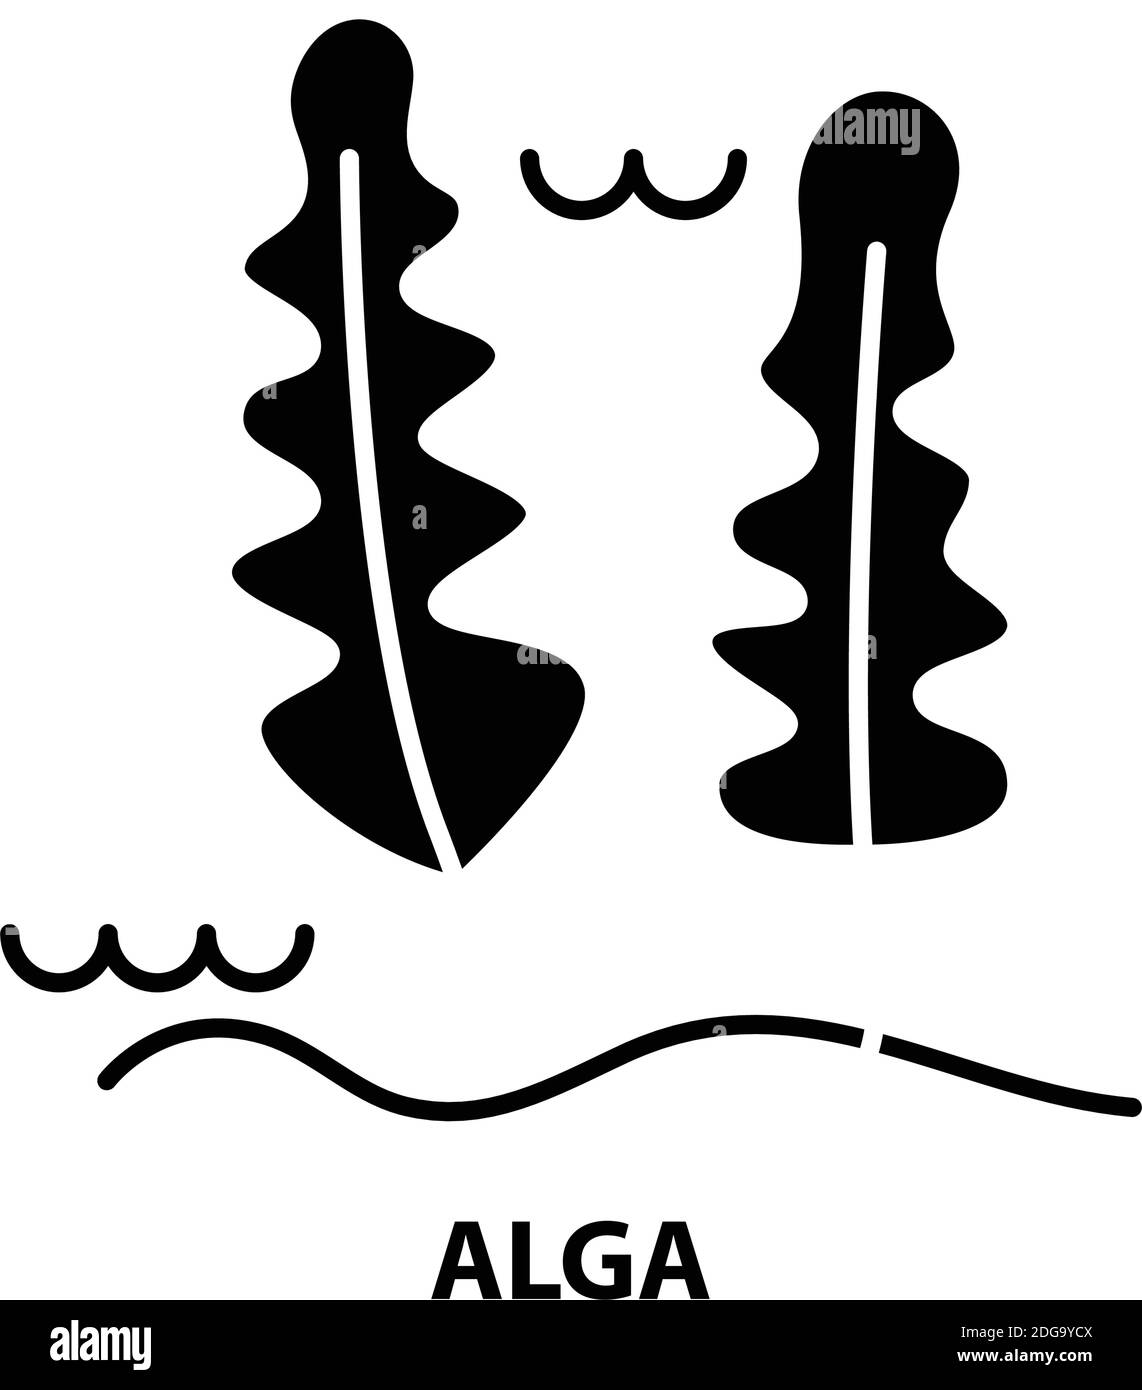 Alga-Symbol, schwarzes Vektorzeichen mit editierbaren Konturen, Konzeptdarstellung Stock Vektor